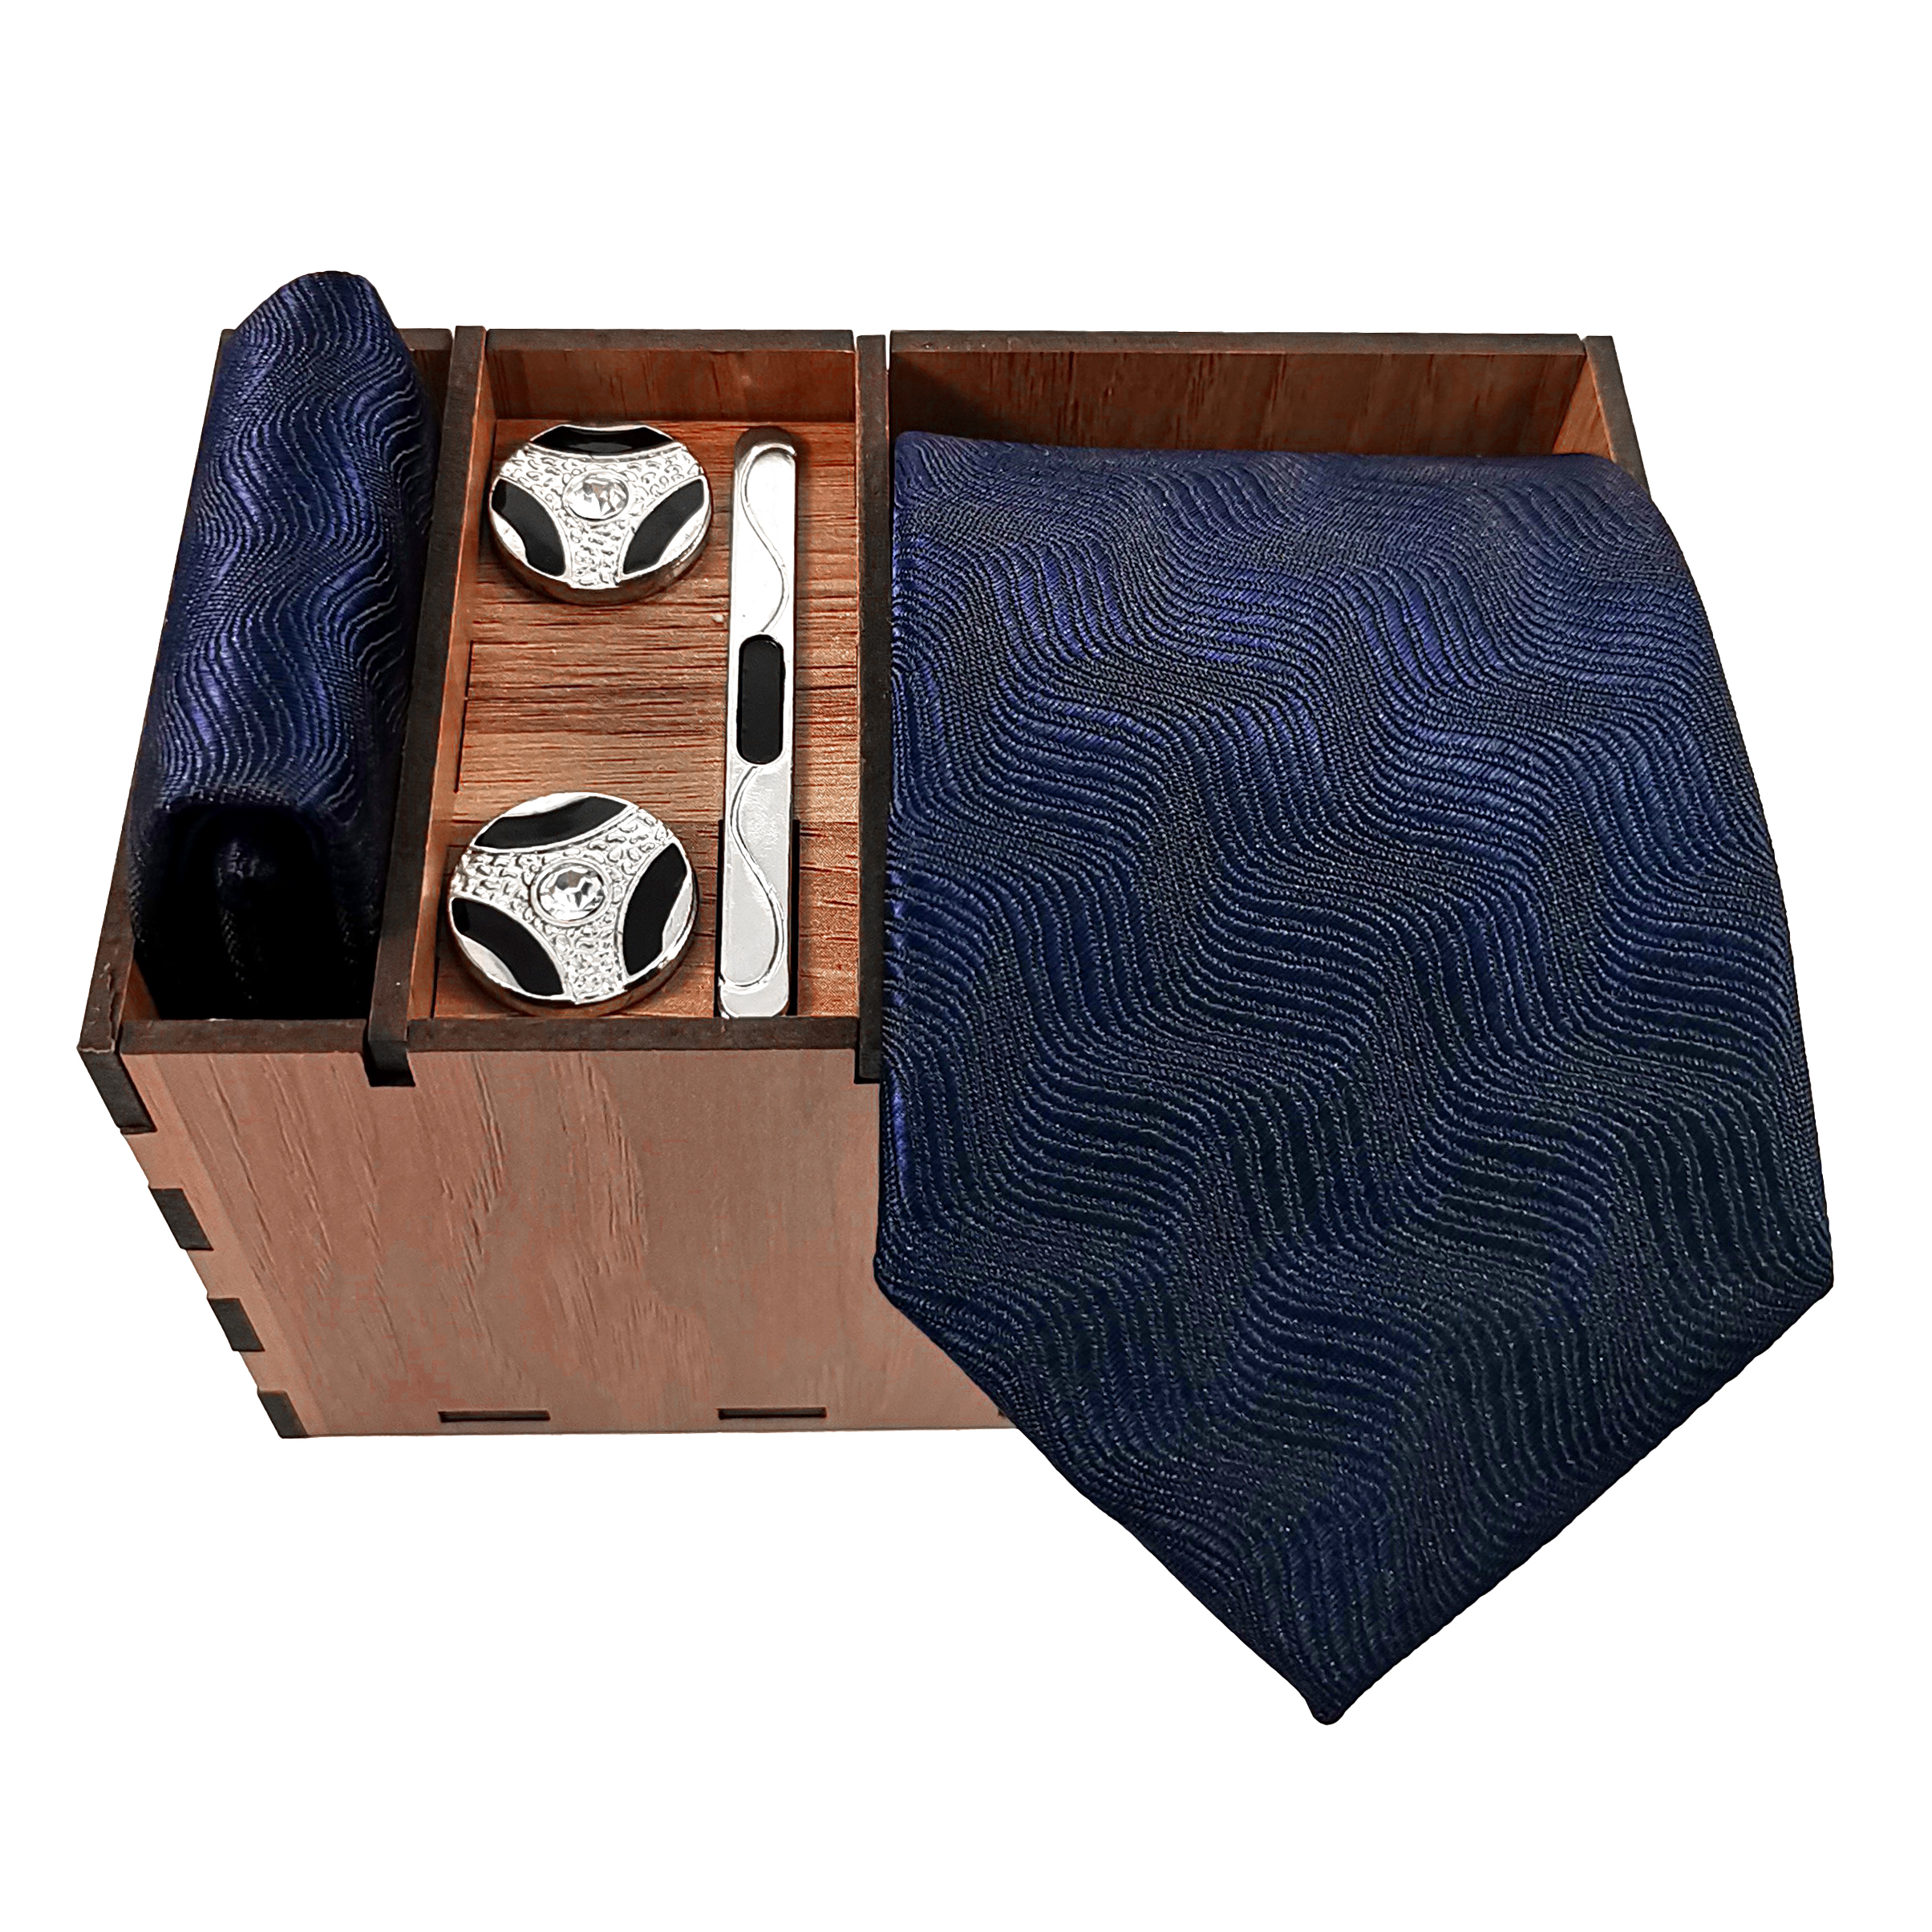 ست کراوات و دستمال جیب و دکمه سردست و گیره کراوات مردانه مدل 542